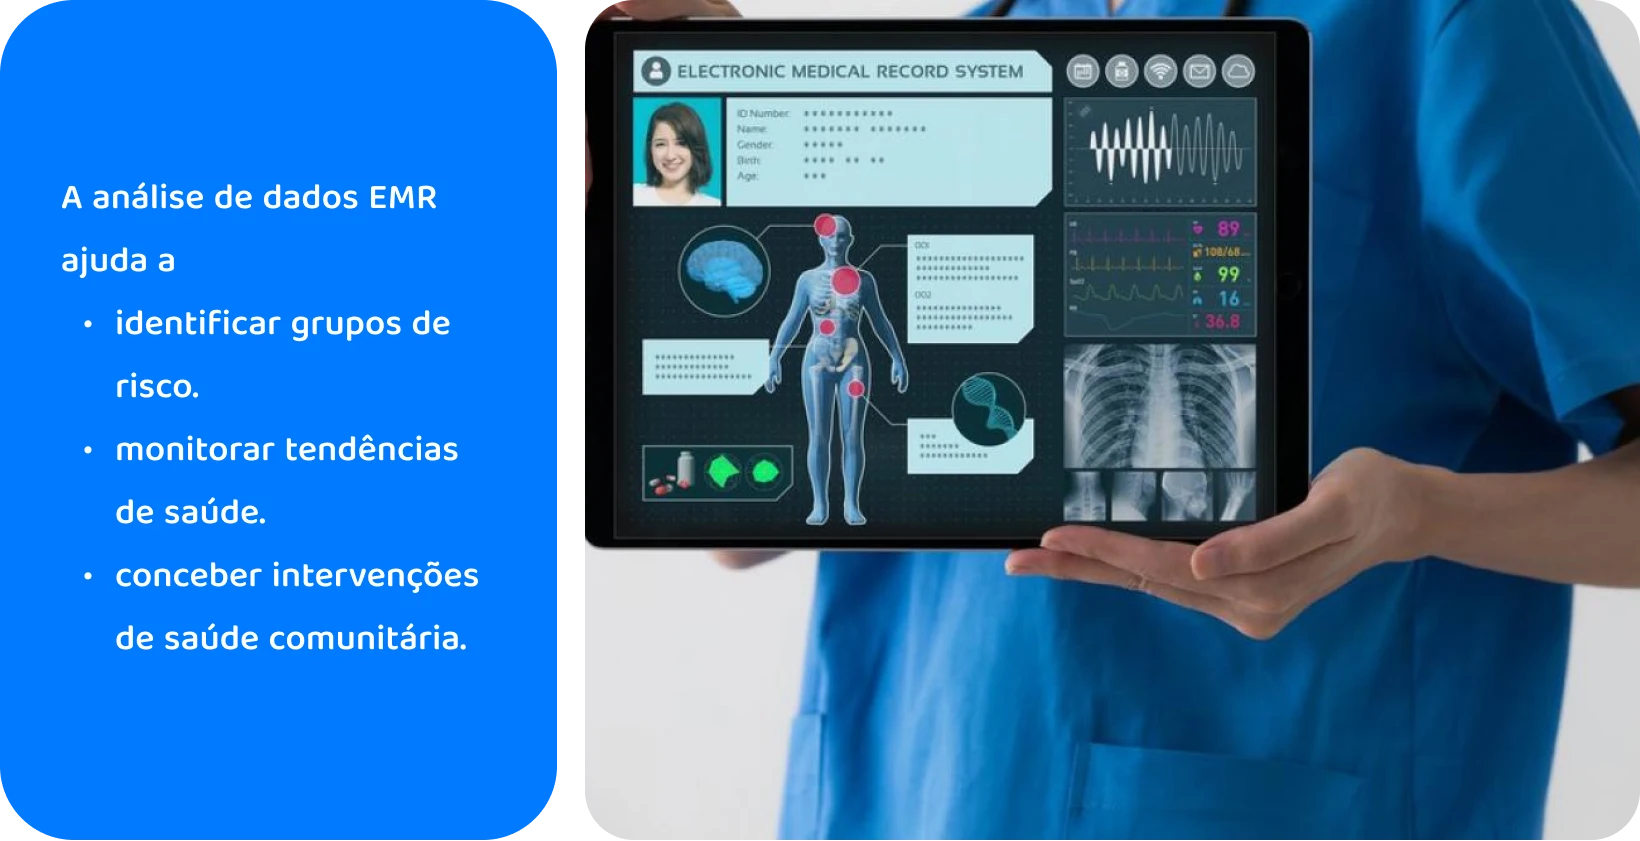 Profissional médico utilizando um tablet com sistema de prontuário eletrônico para analisar dados de saúde do paciente.